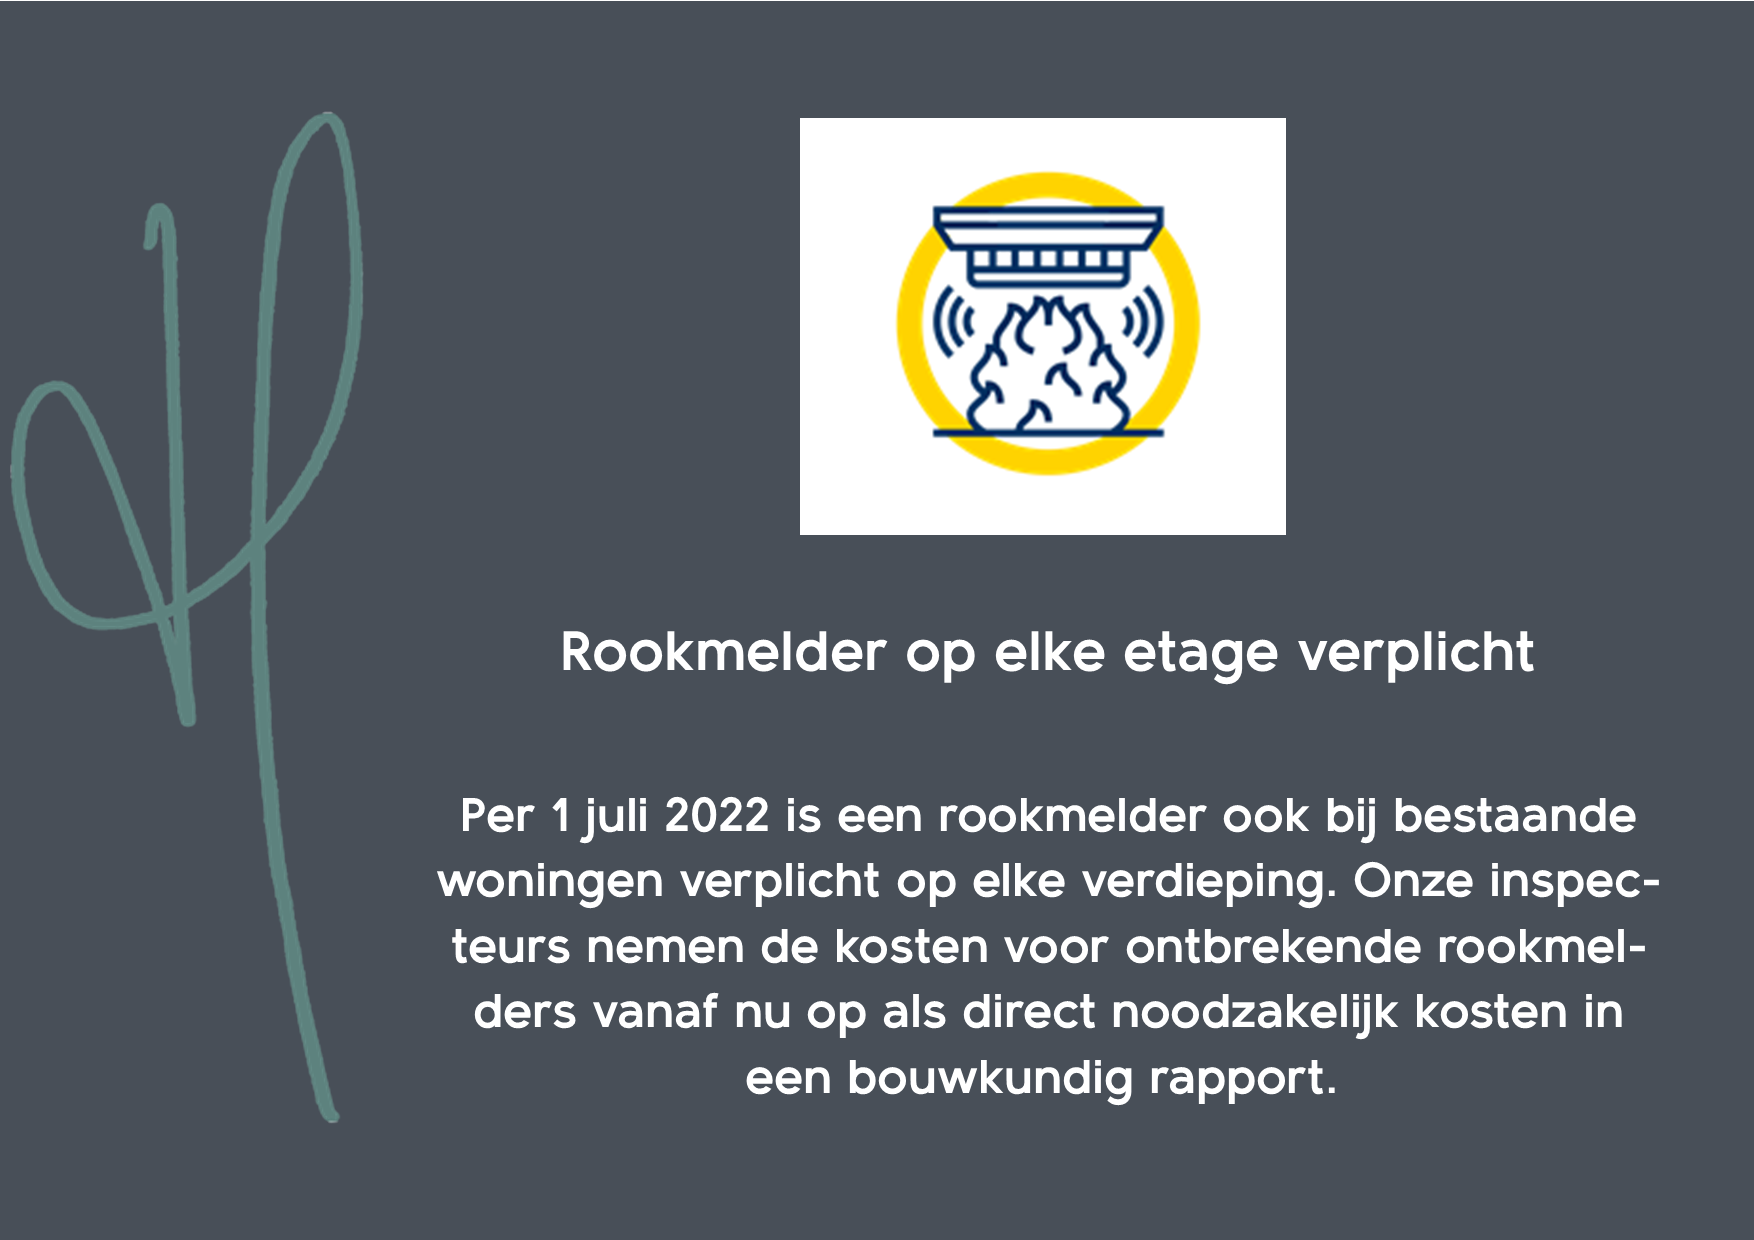 Rookmelder verplicht op iedere etage met ingang van 1 juli 2022!